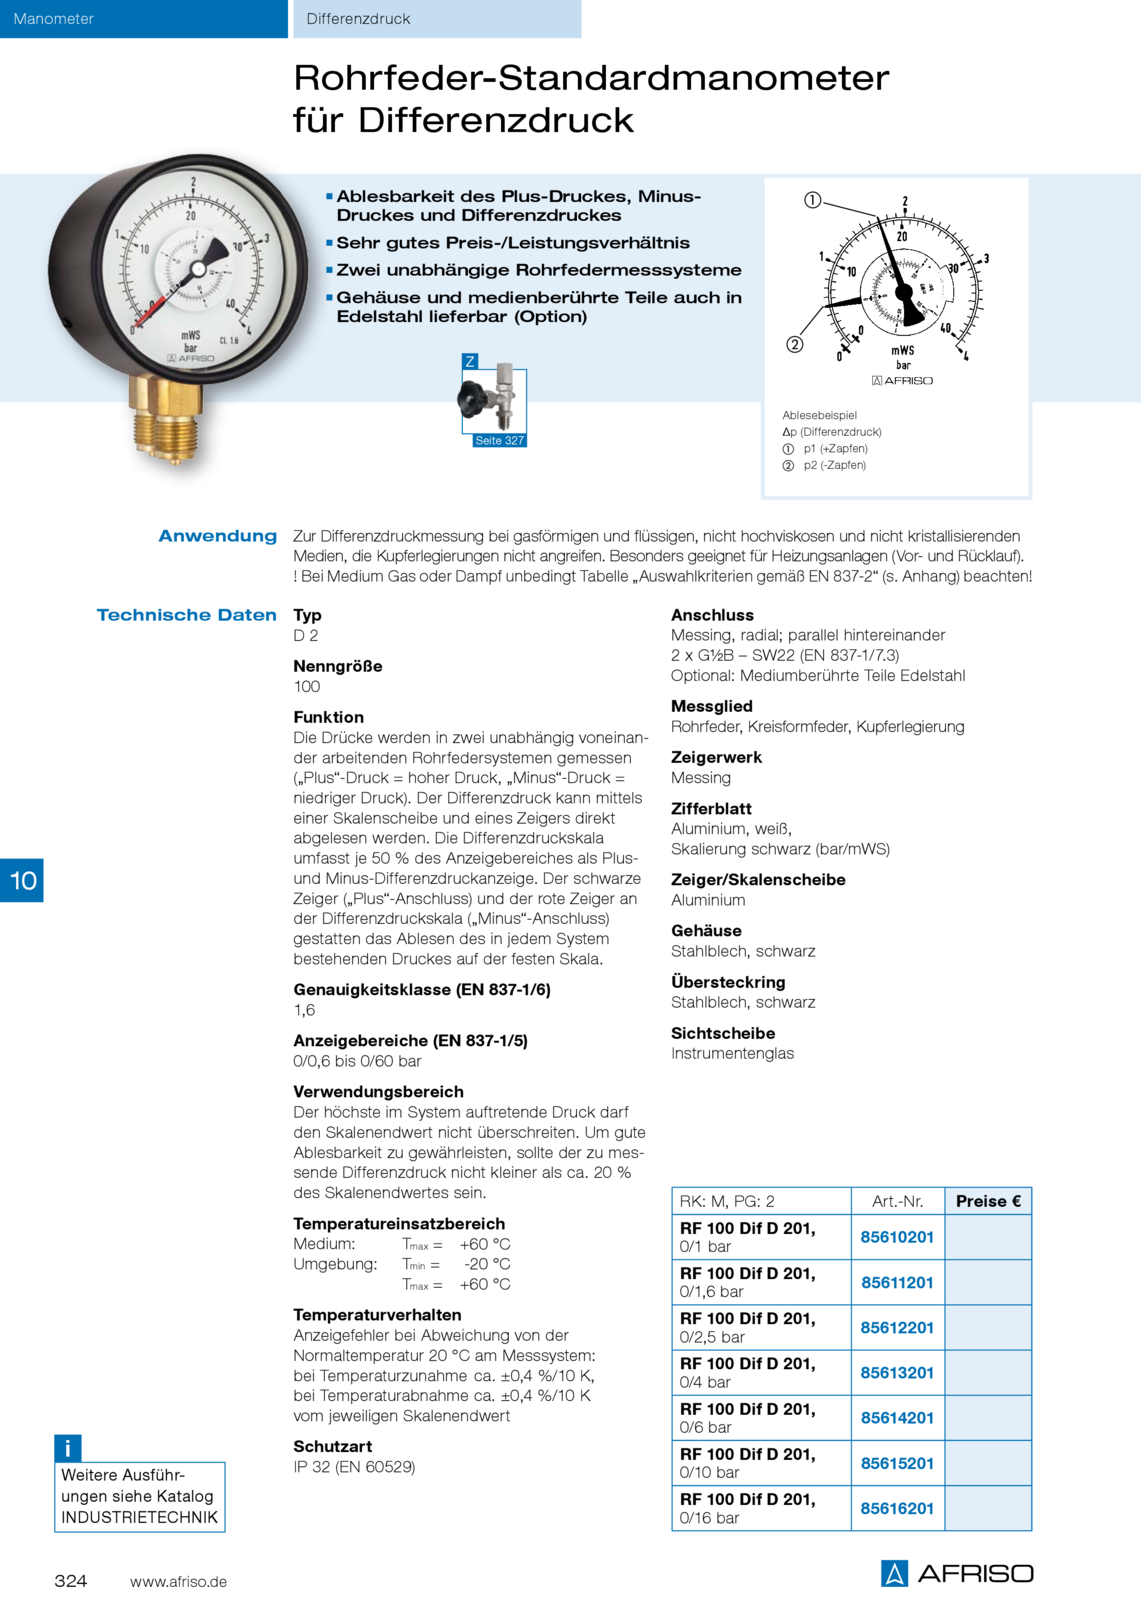 Afriso Rohrfeder-Standardmanometer献给Differenzdruck典型值D2